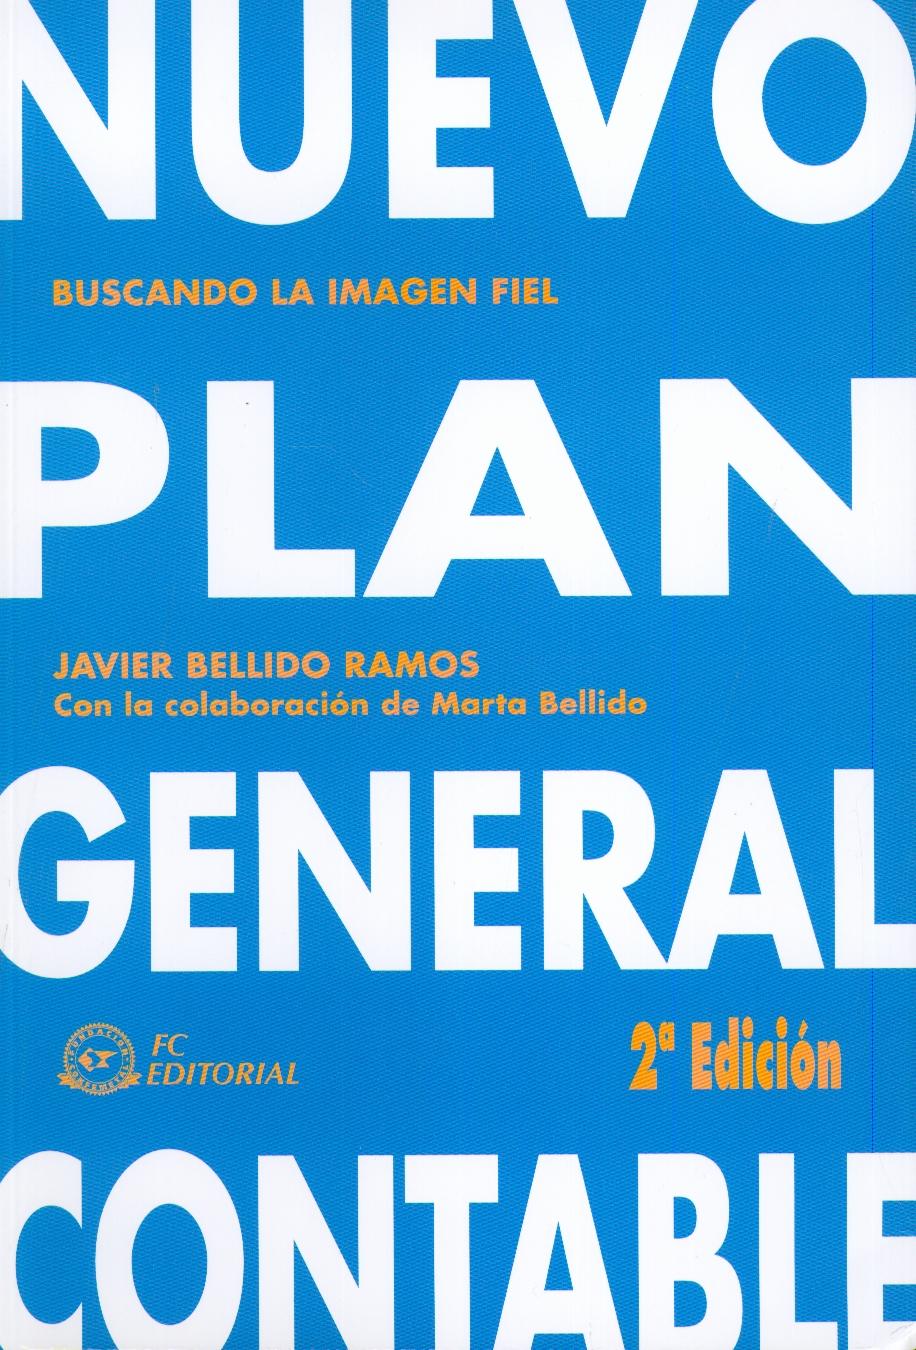 Nuevo Plan General Contable